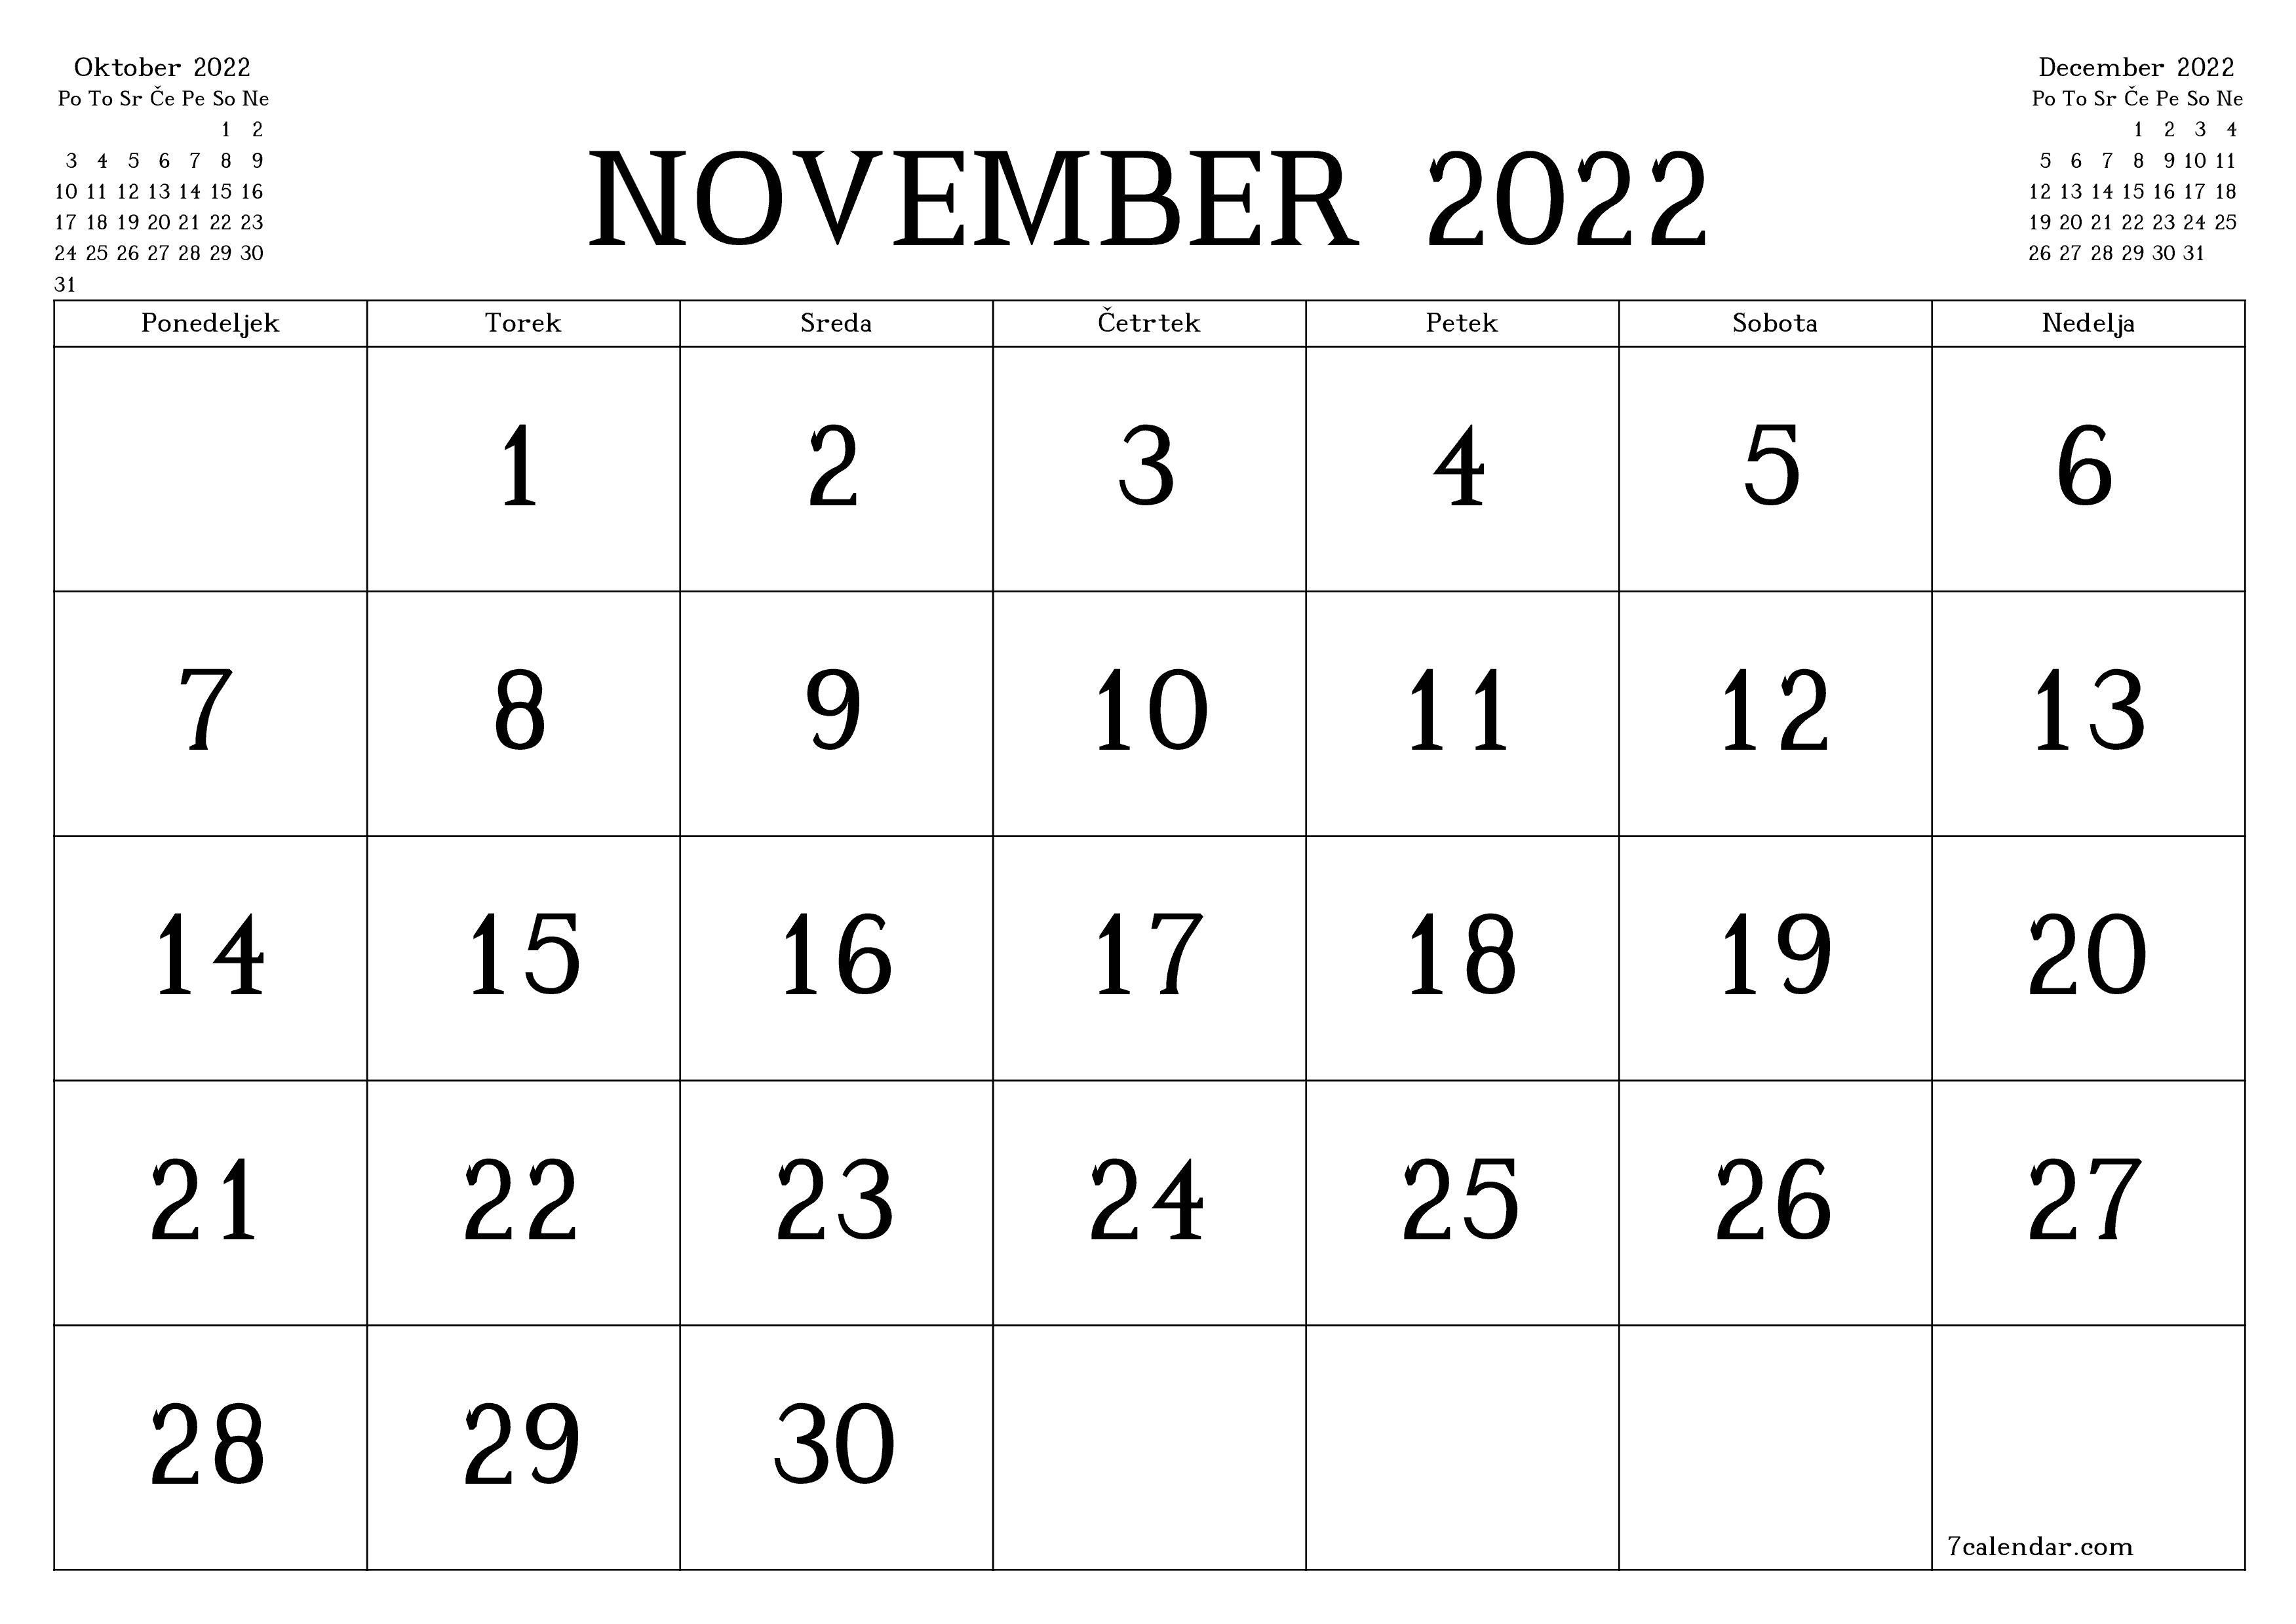 Prazen mesečni načrtovalec koledarja za mesec November 2022 z opombami, natisnjenimi v PDF PNG Slovenian